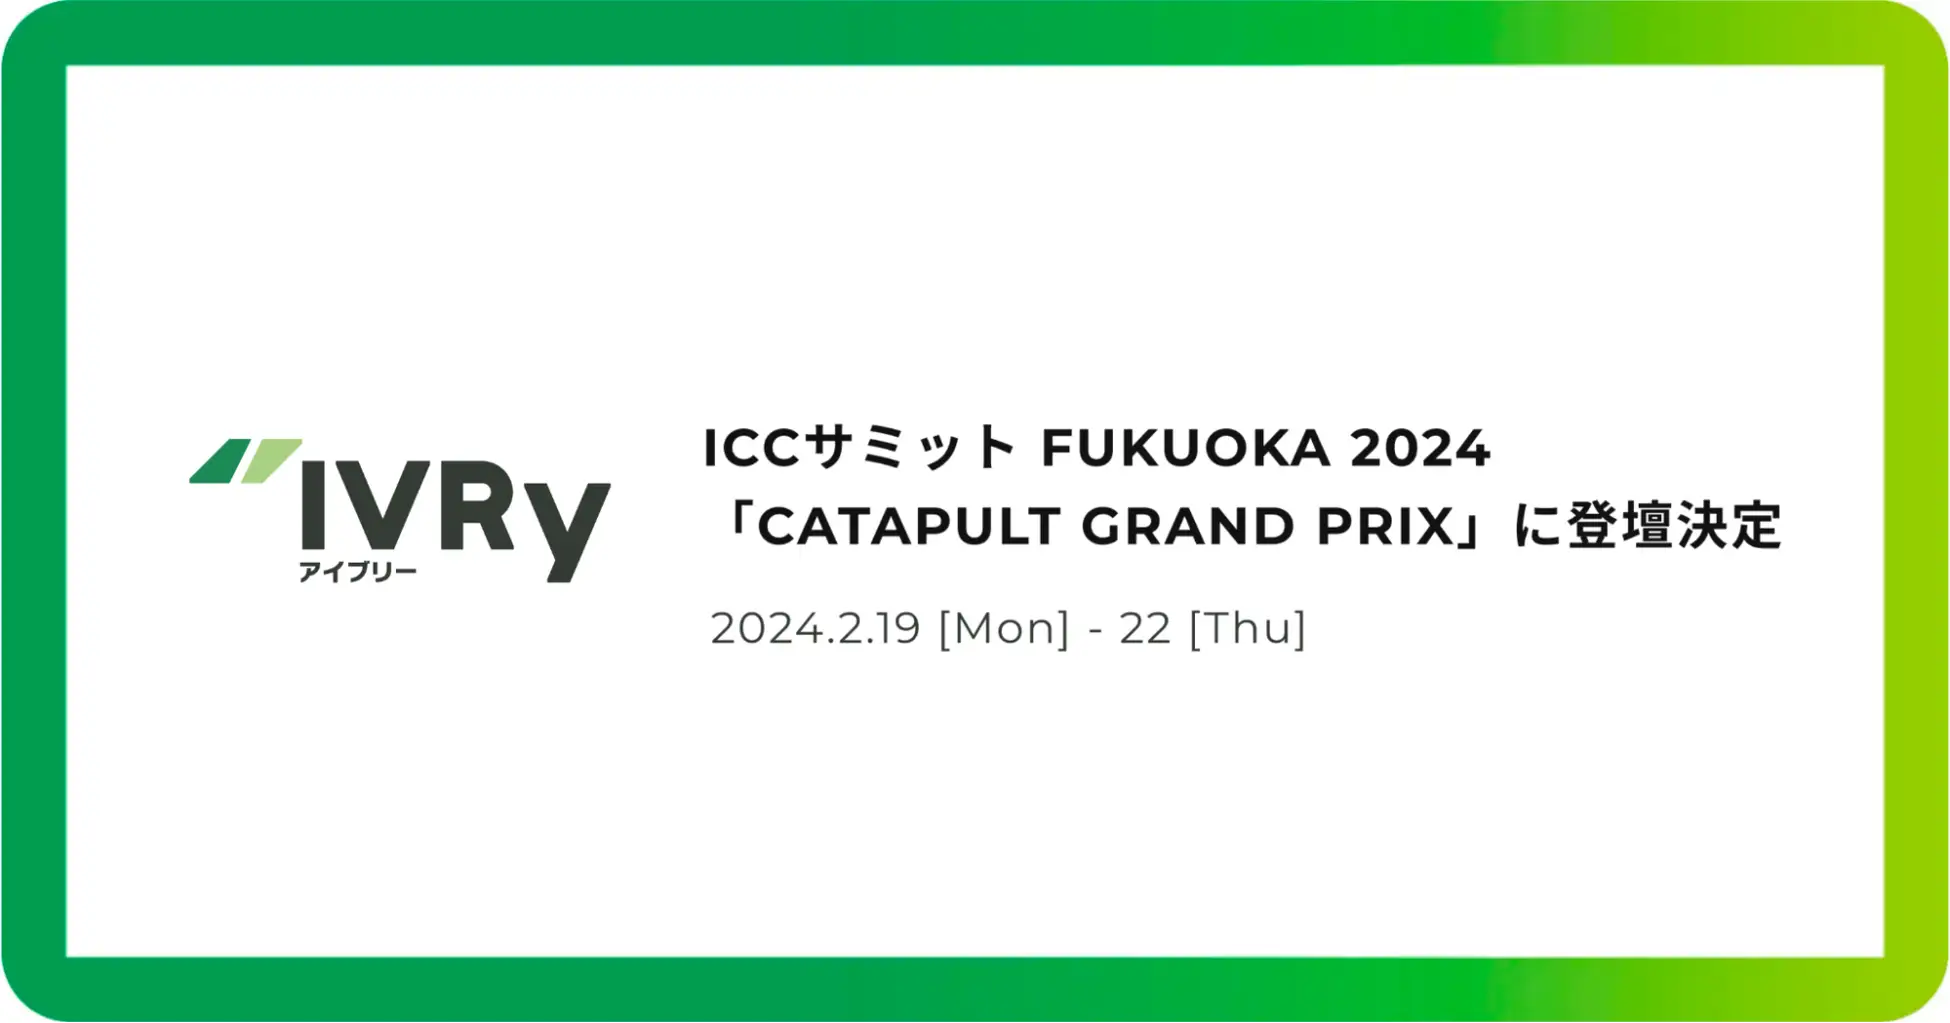 ICCサミット FUKUOKA 2024内「カタパルト・グランプリ」に、電話AI SaaSのIVRy（アイブリー）代表奥西が登壇決定